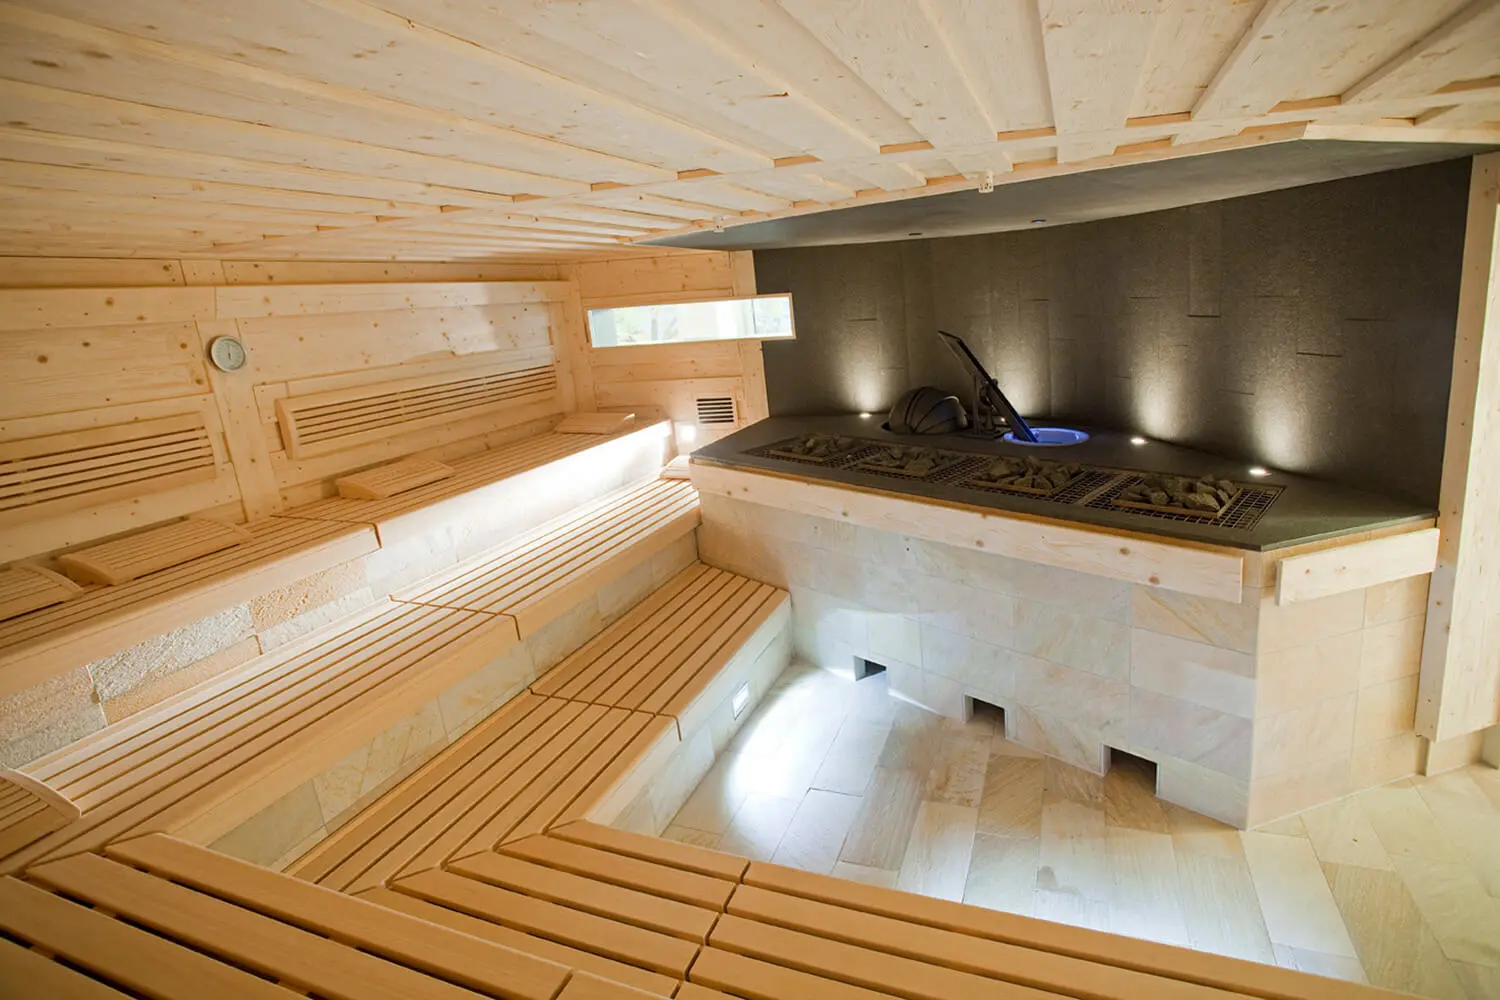 Innenansicht Sauna im LEUZE: Holzbänke und Aufgussbereich ohne Besucher.